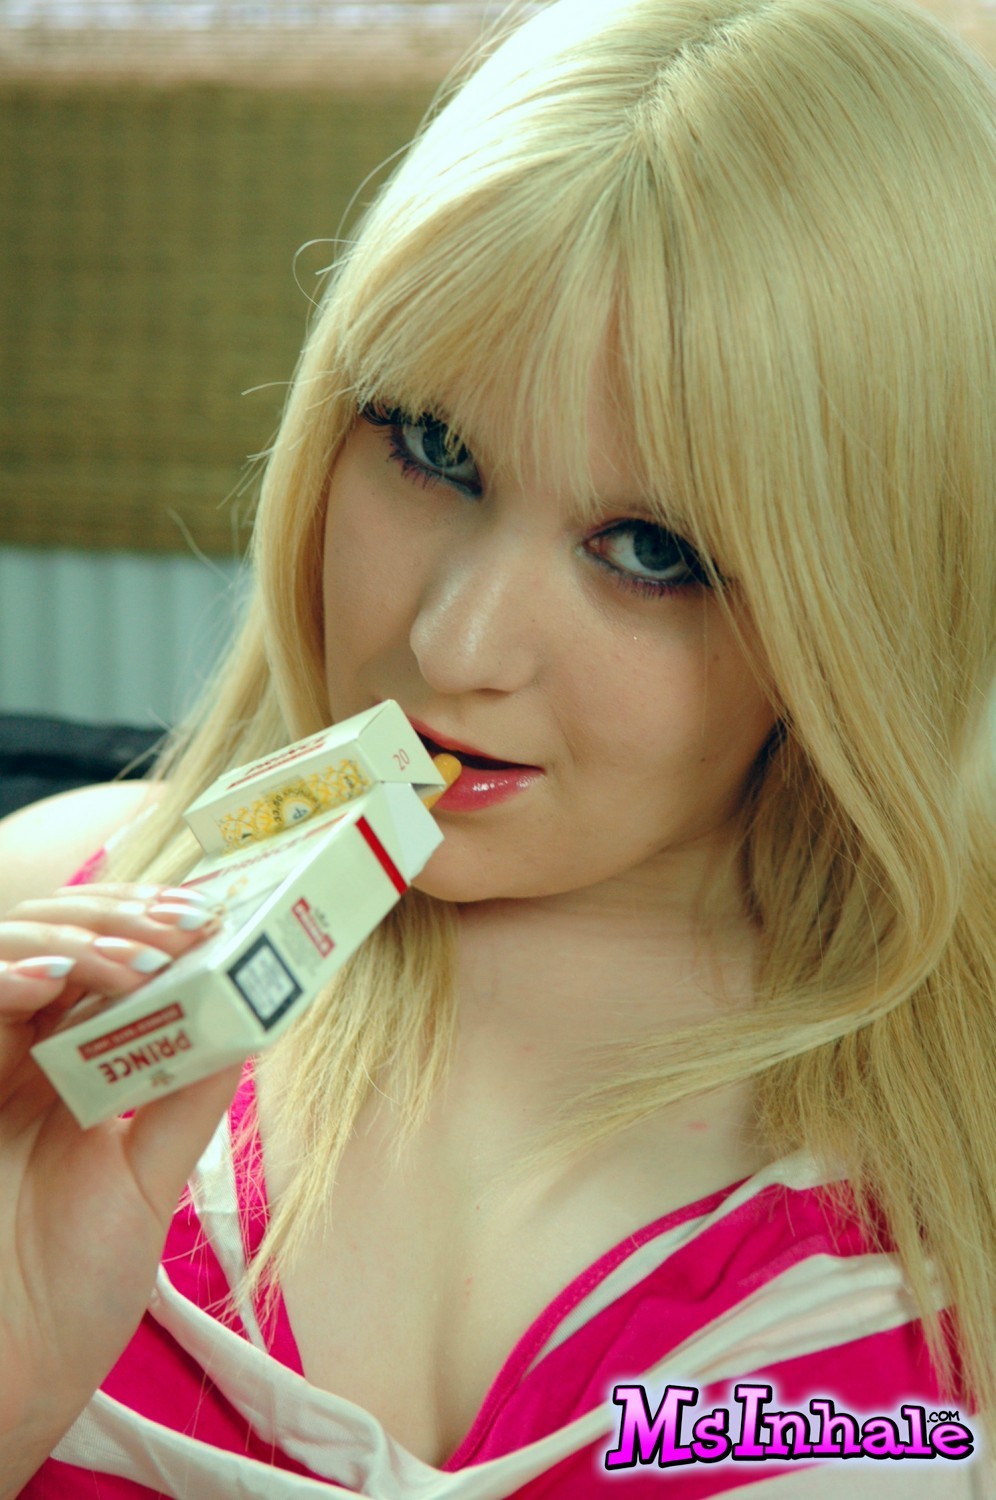 Mignonne salope blonde msinhale aime fumer des cigarettes pendant que vous regardez.
 #70261653